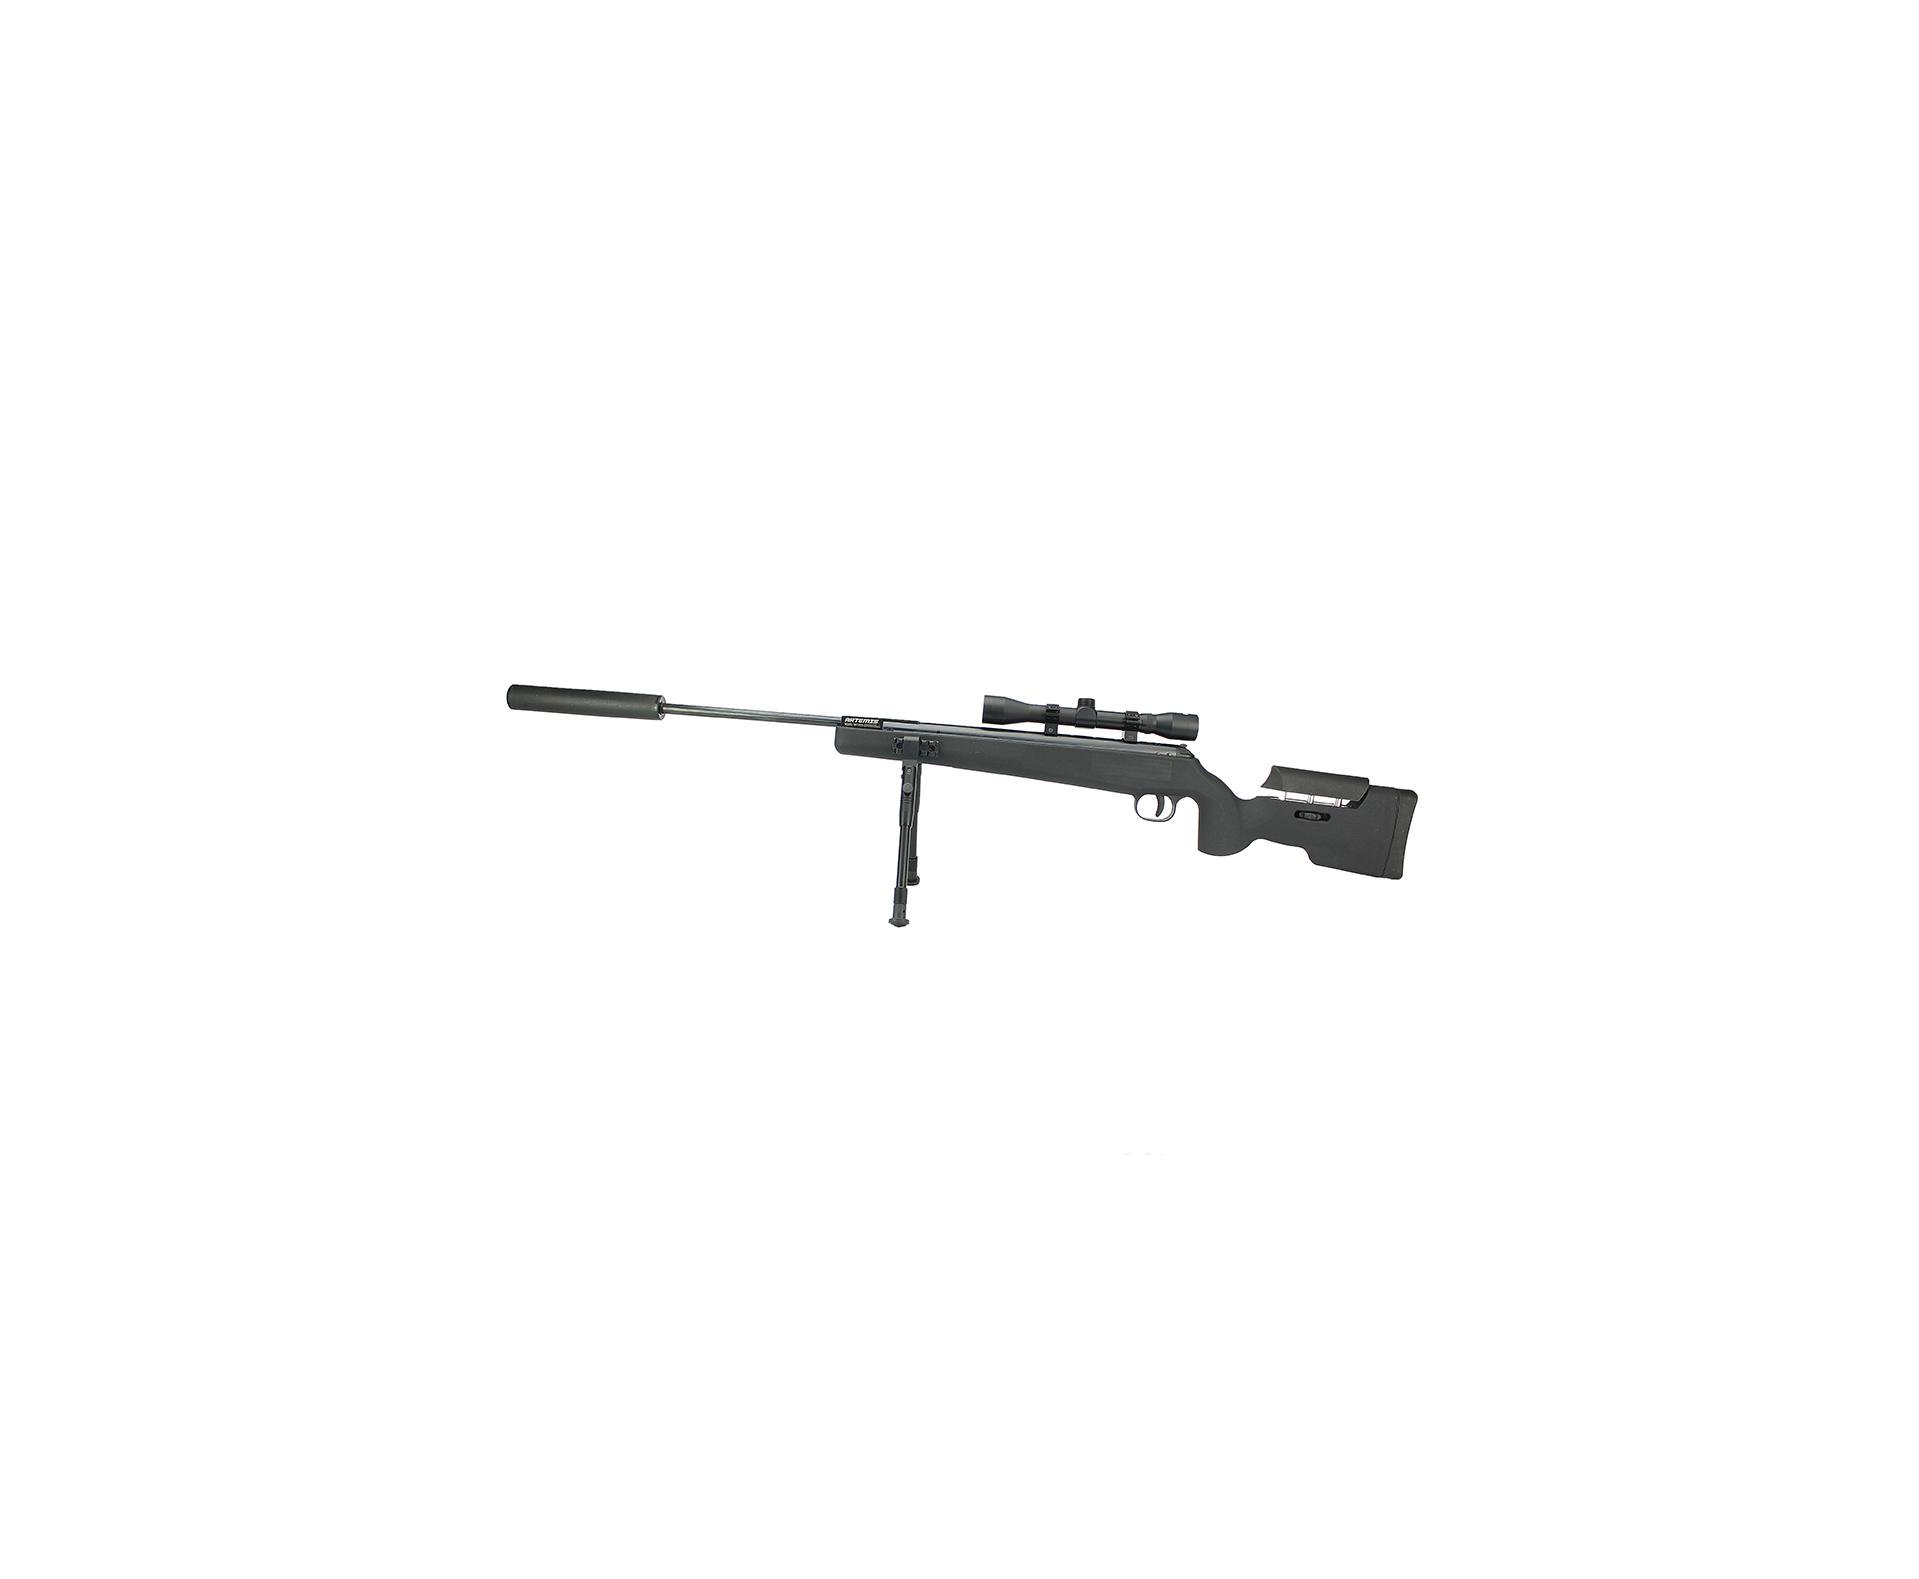 Carabina De Pressão Artemis Gp 1250 Sniper Gas Ram 70kg Black 5,5mm + Bipé + Luneta + Supressor